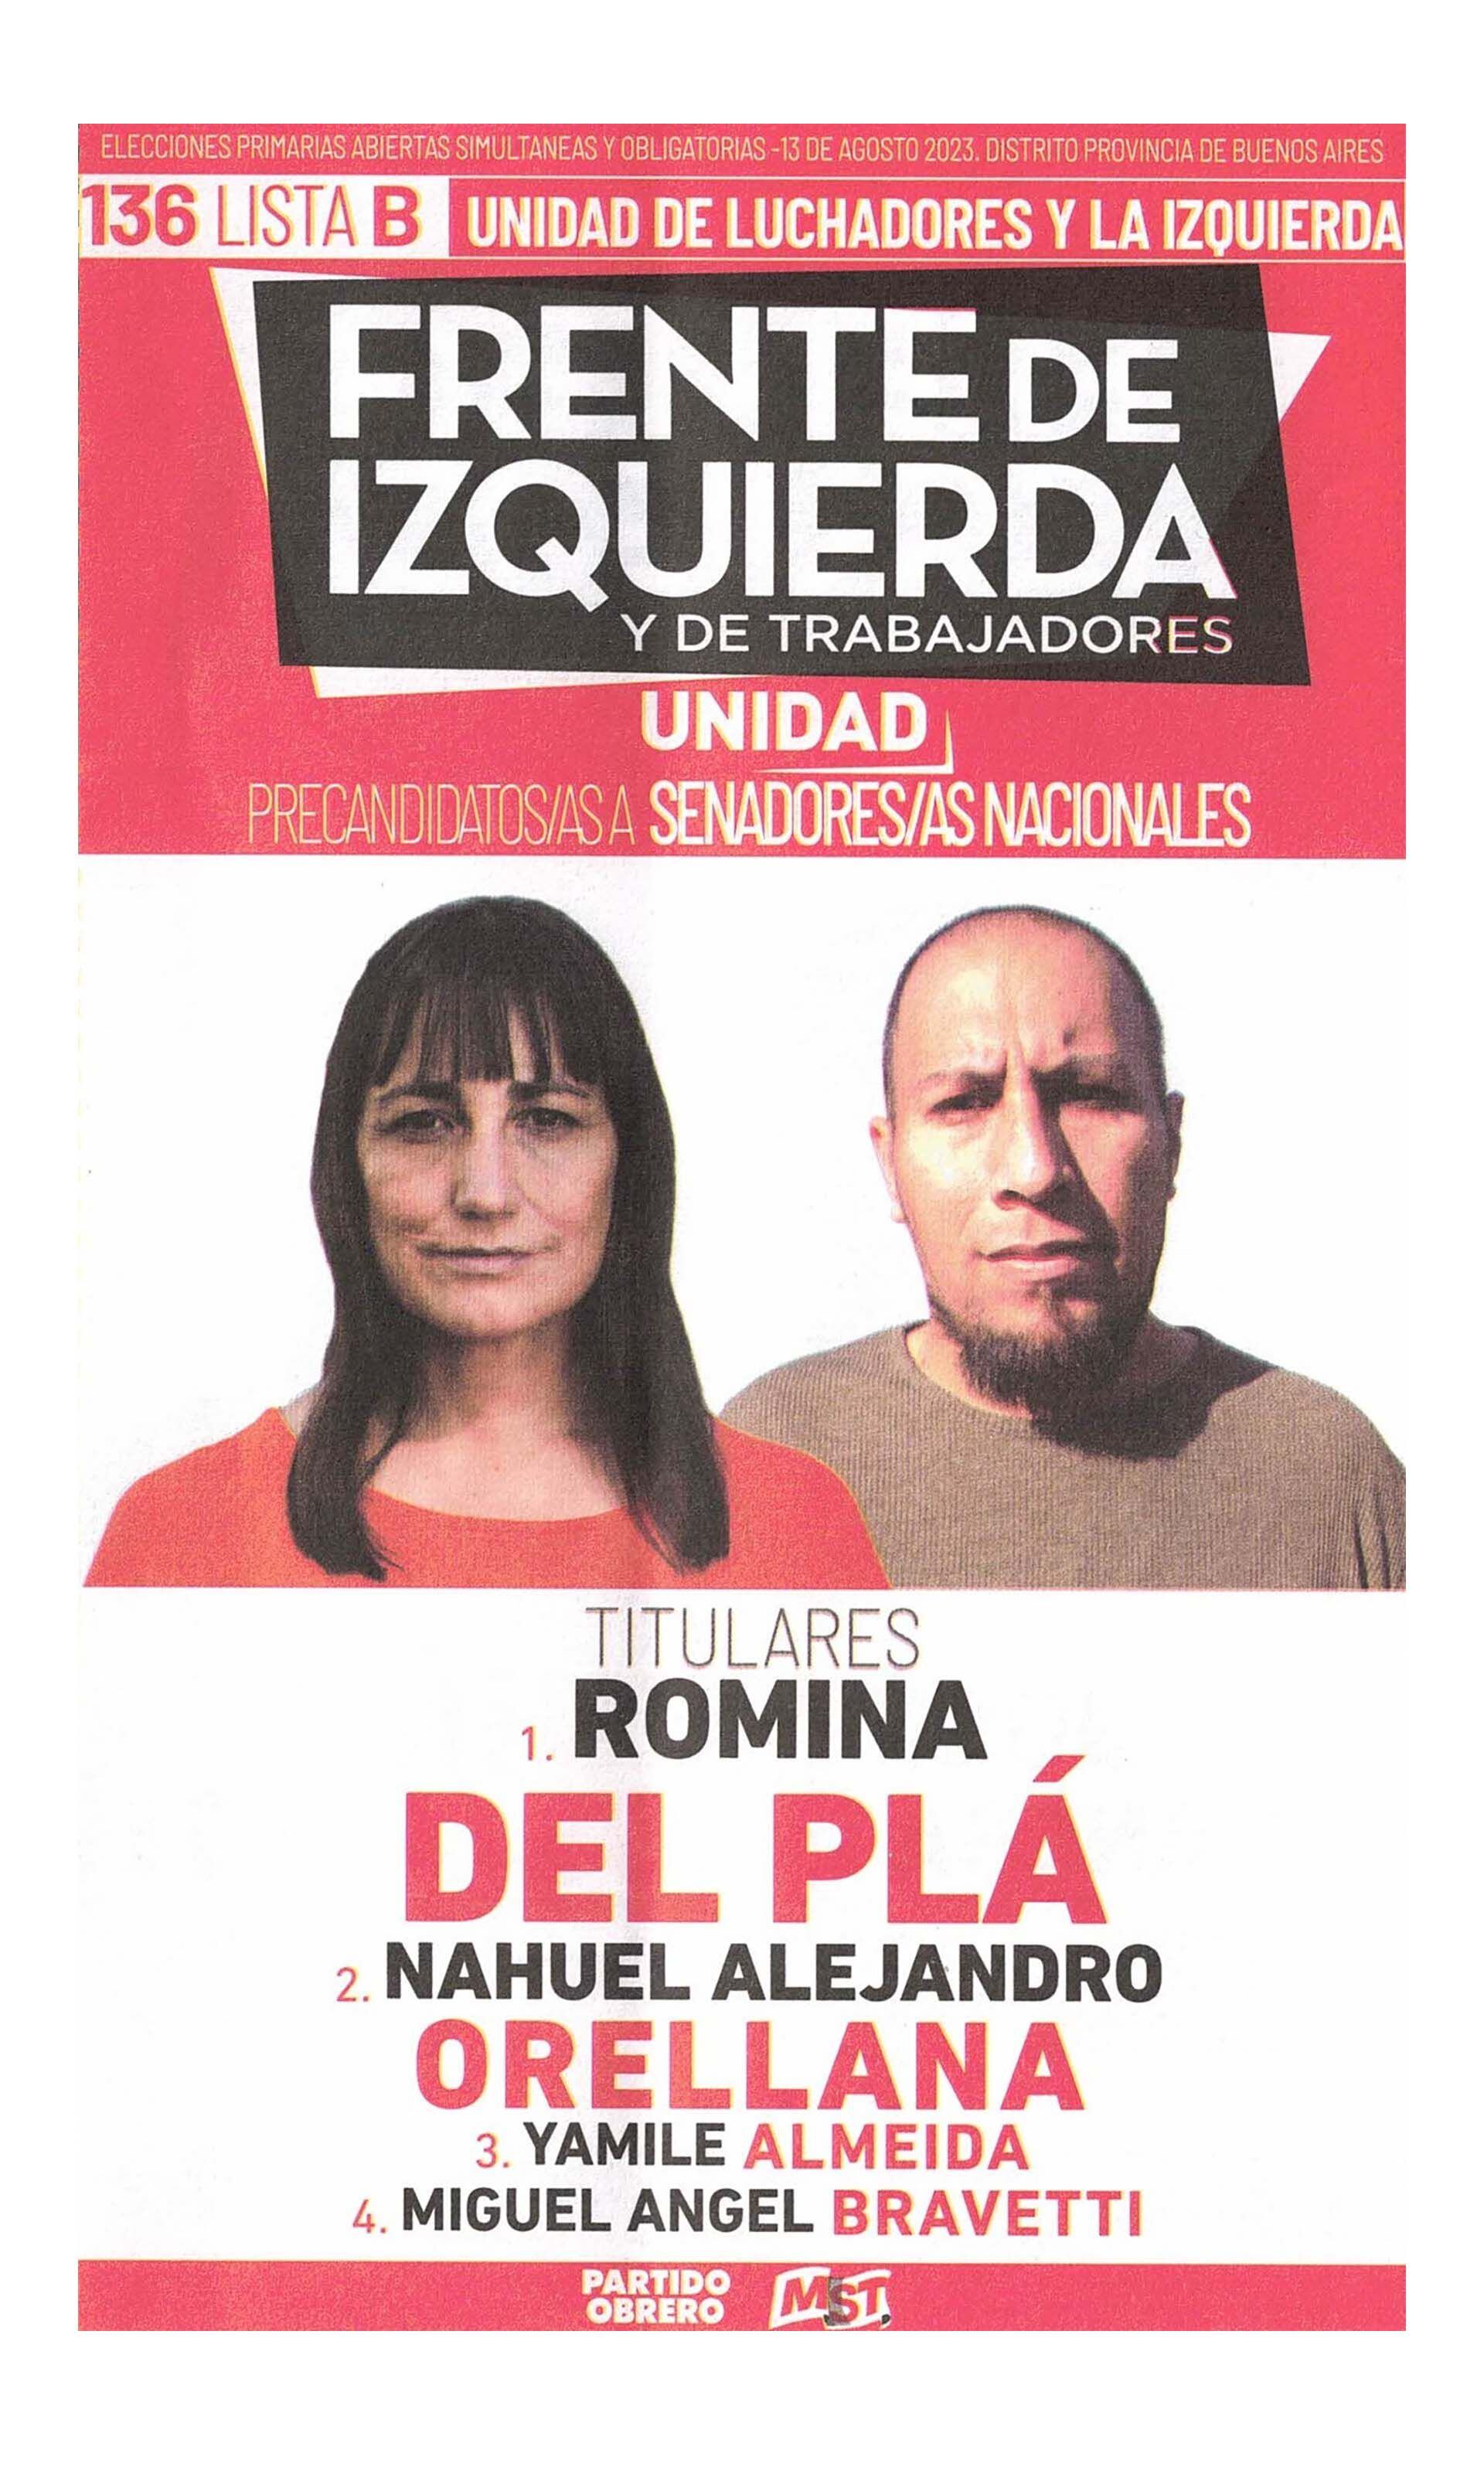 La boleta oficial de Romina del Plá de precandidatos a senadores nacionales de Buenos Aires